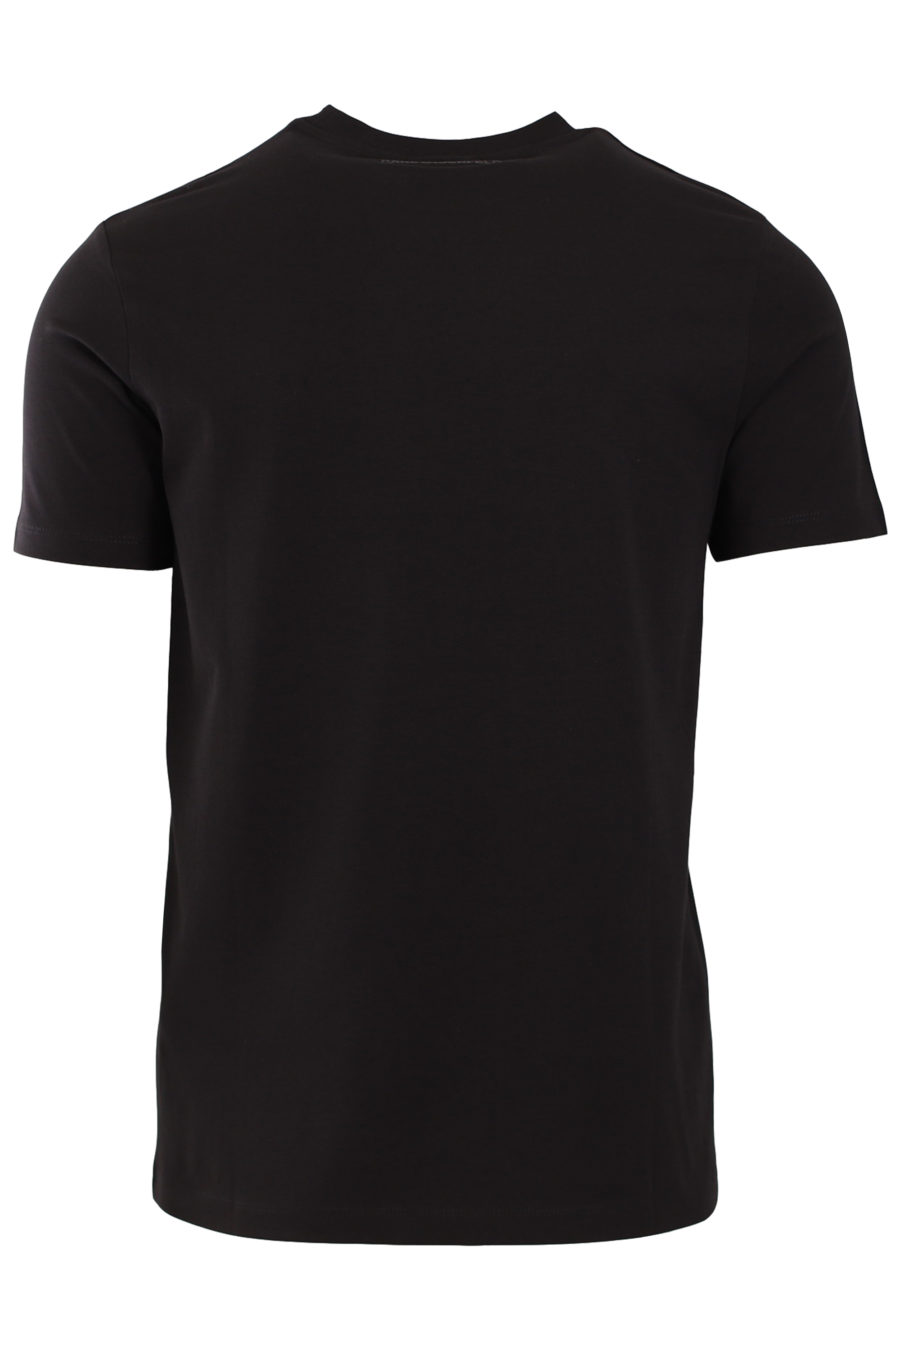 T-shirt noir avec logo - 656be8051bb09fd4dfc89fb10ae4d16b8734ee5d